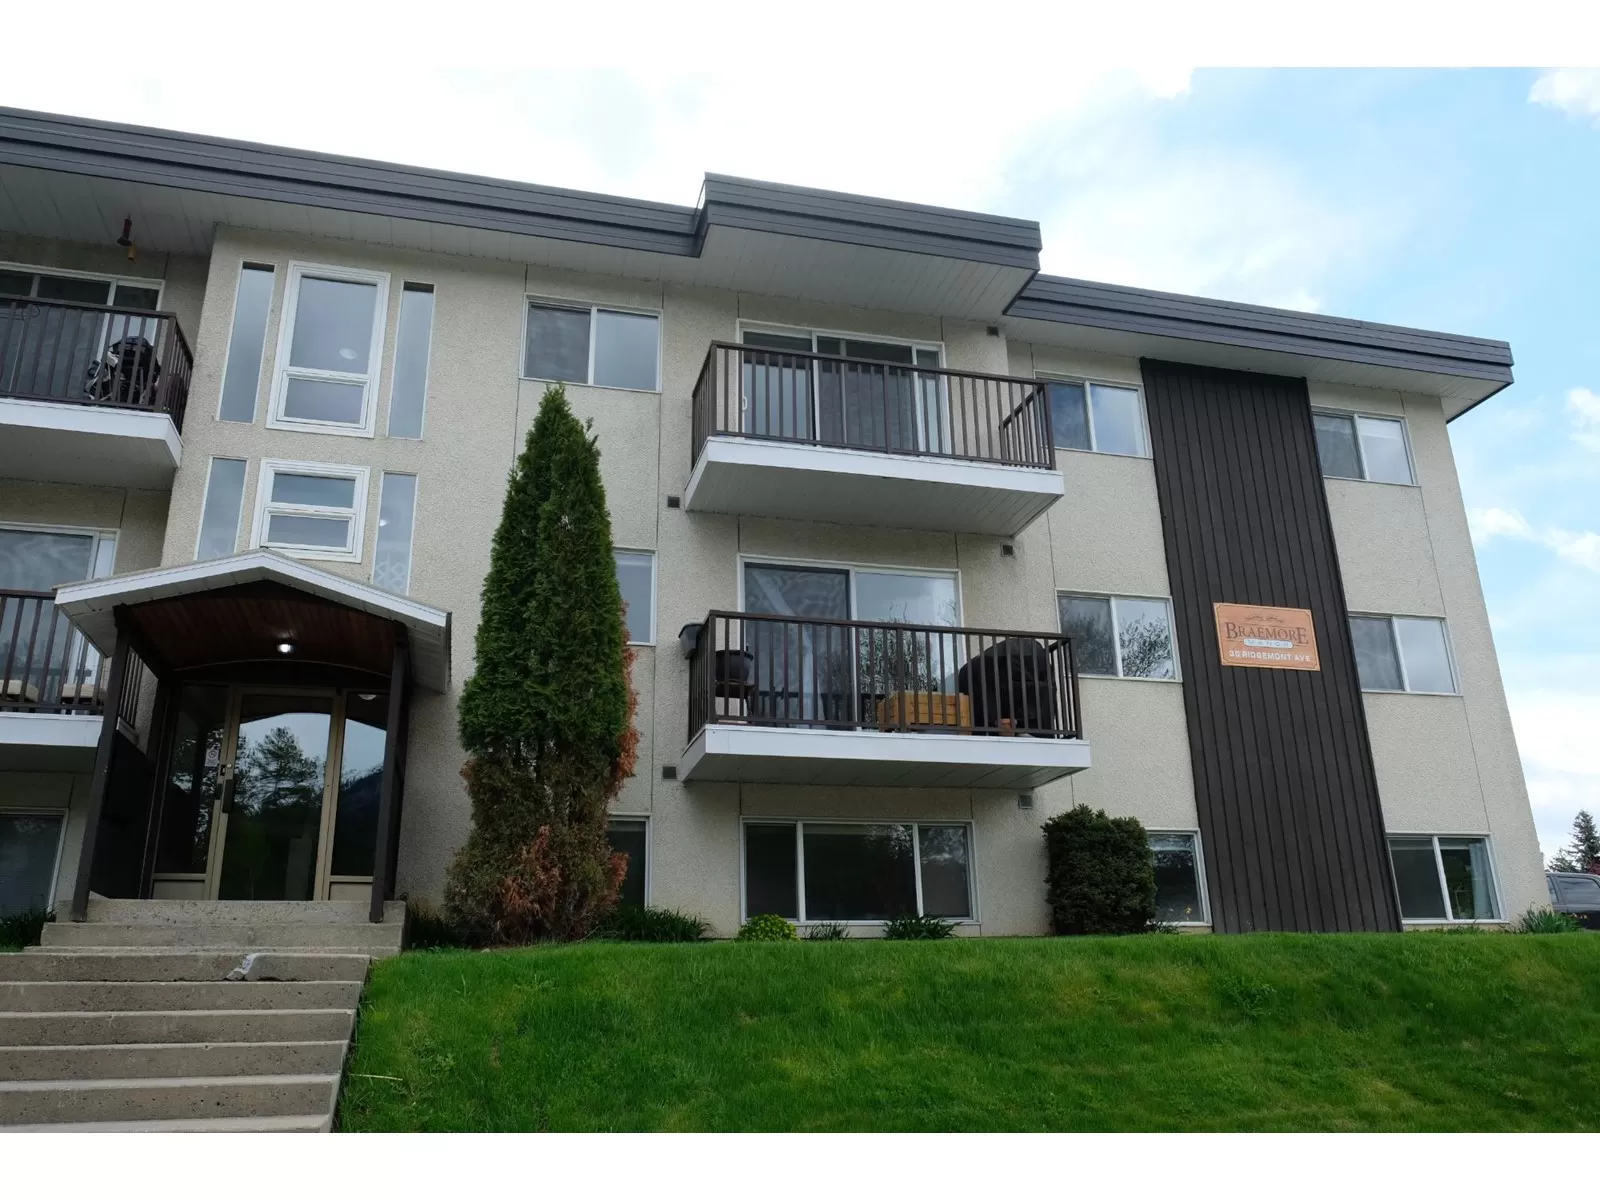 Apartment for rent: 206 - 30 Ridgemont Avenue, Fernie, British Columbia V0B 1M2